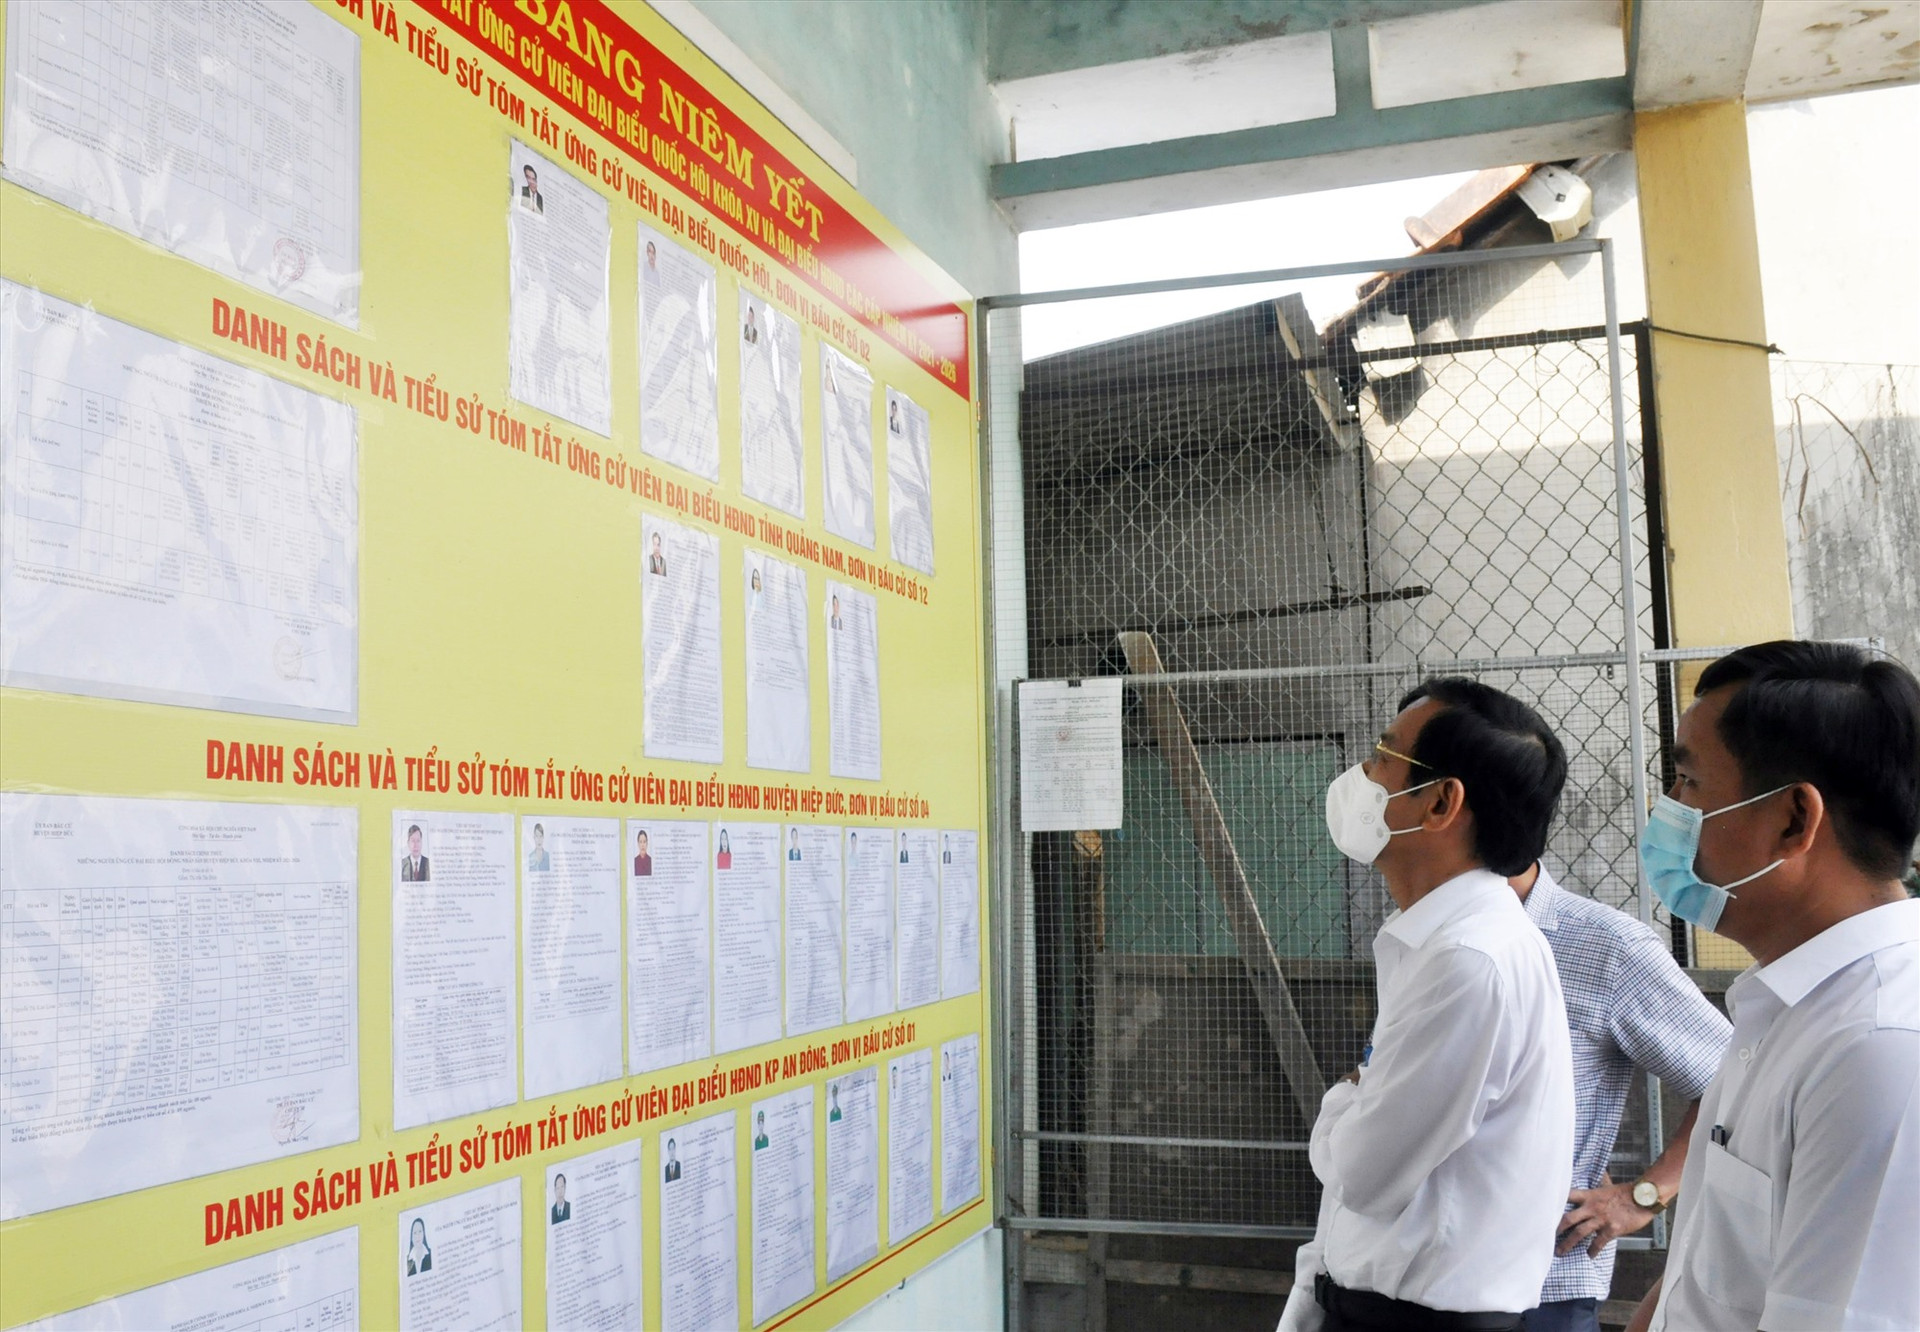 Trưởng ban Tổ chức Tỉnh ủy Nguyễn Chín kiểm tra việc niêm yết danh sách ứng cử viên đại biểu dân cử các cấp tại khu vực bỏ phiếu khối phố An Đông. Ảnh: N.Đ